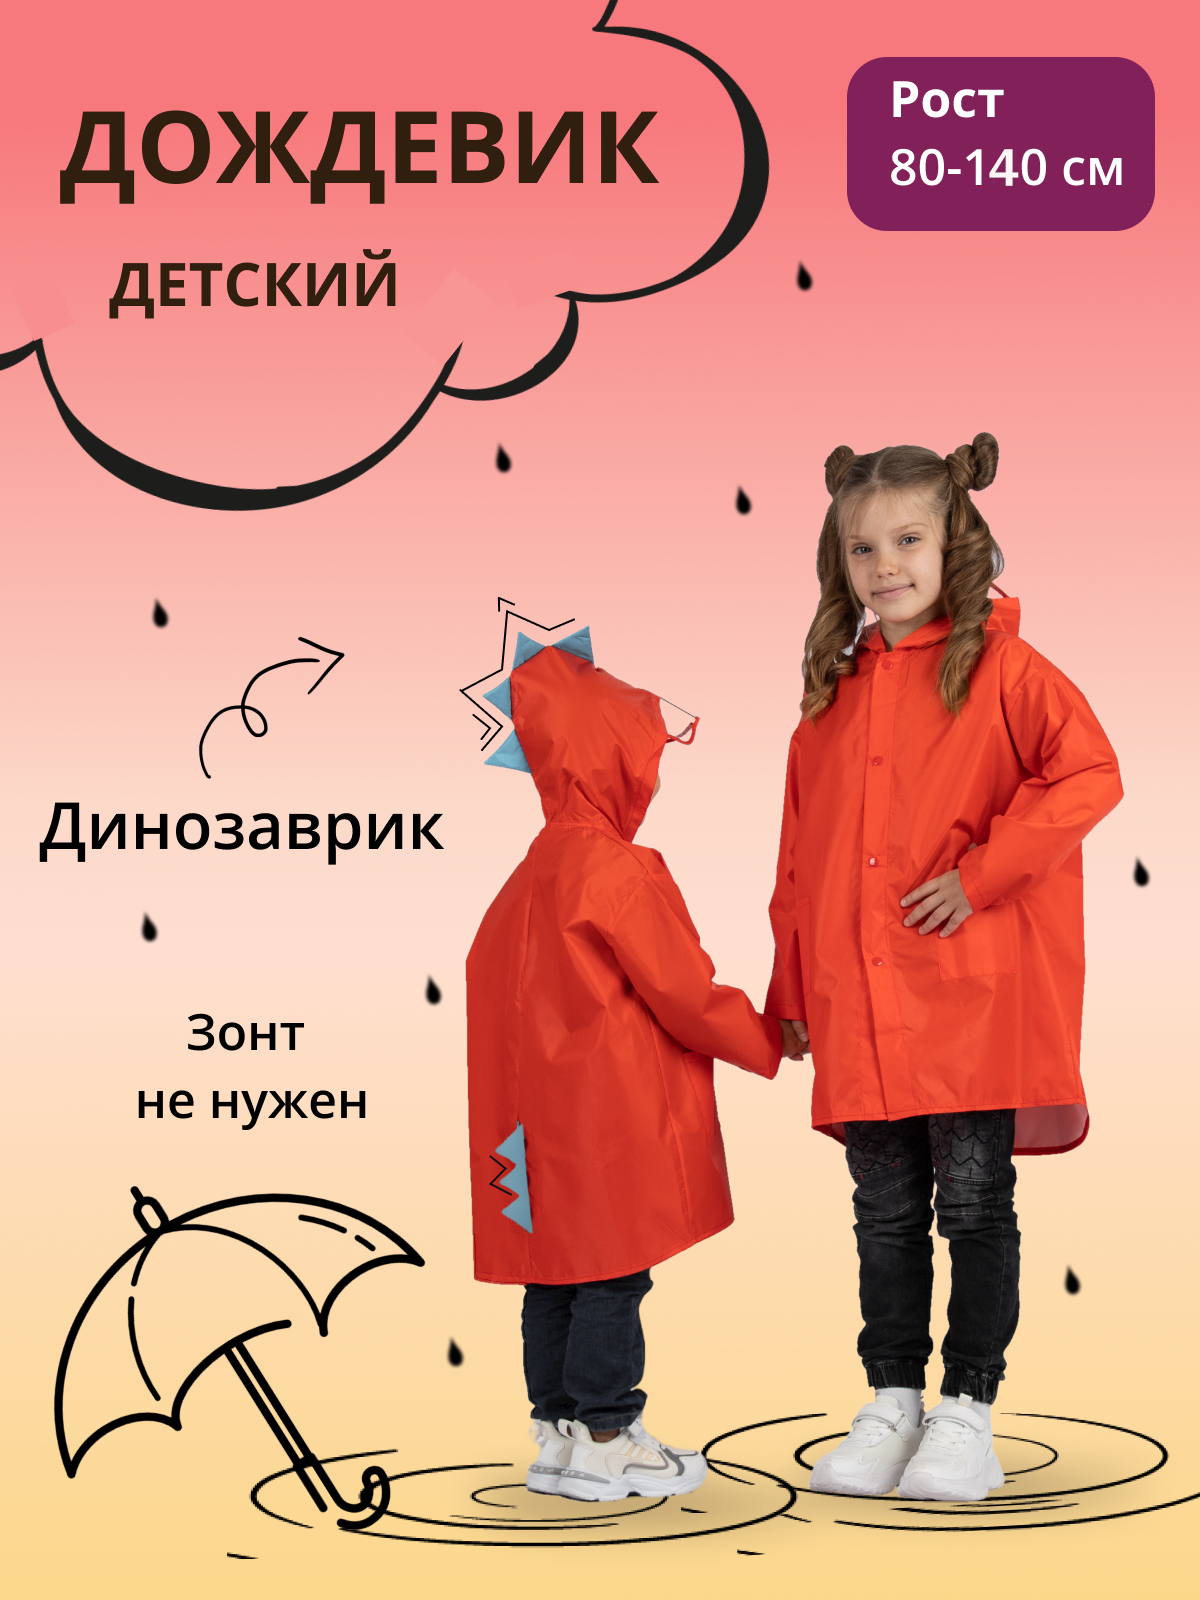 Дождевик детский Под дождем 122903460, красный, 110